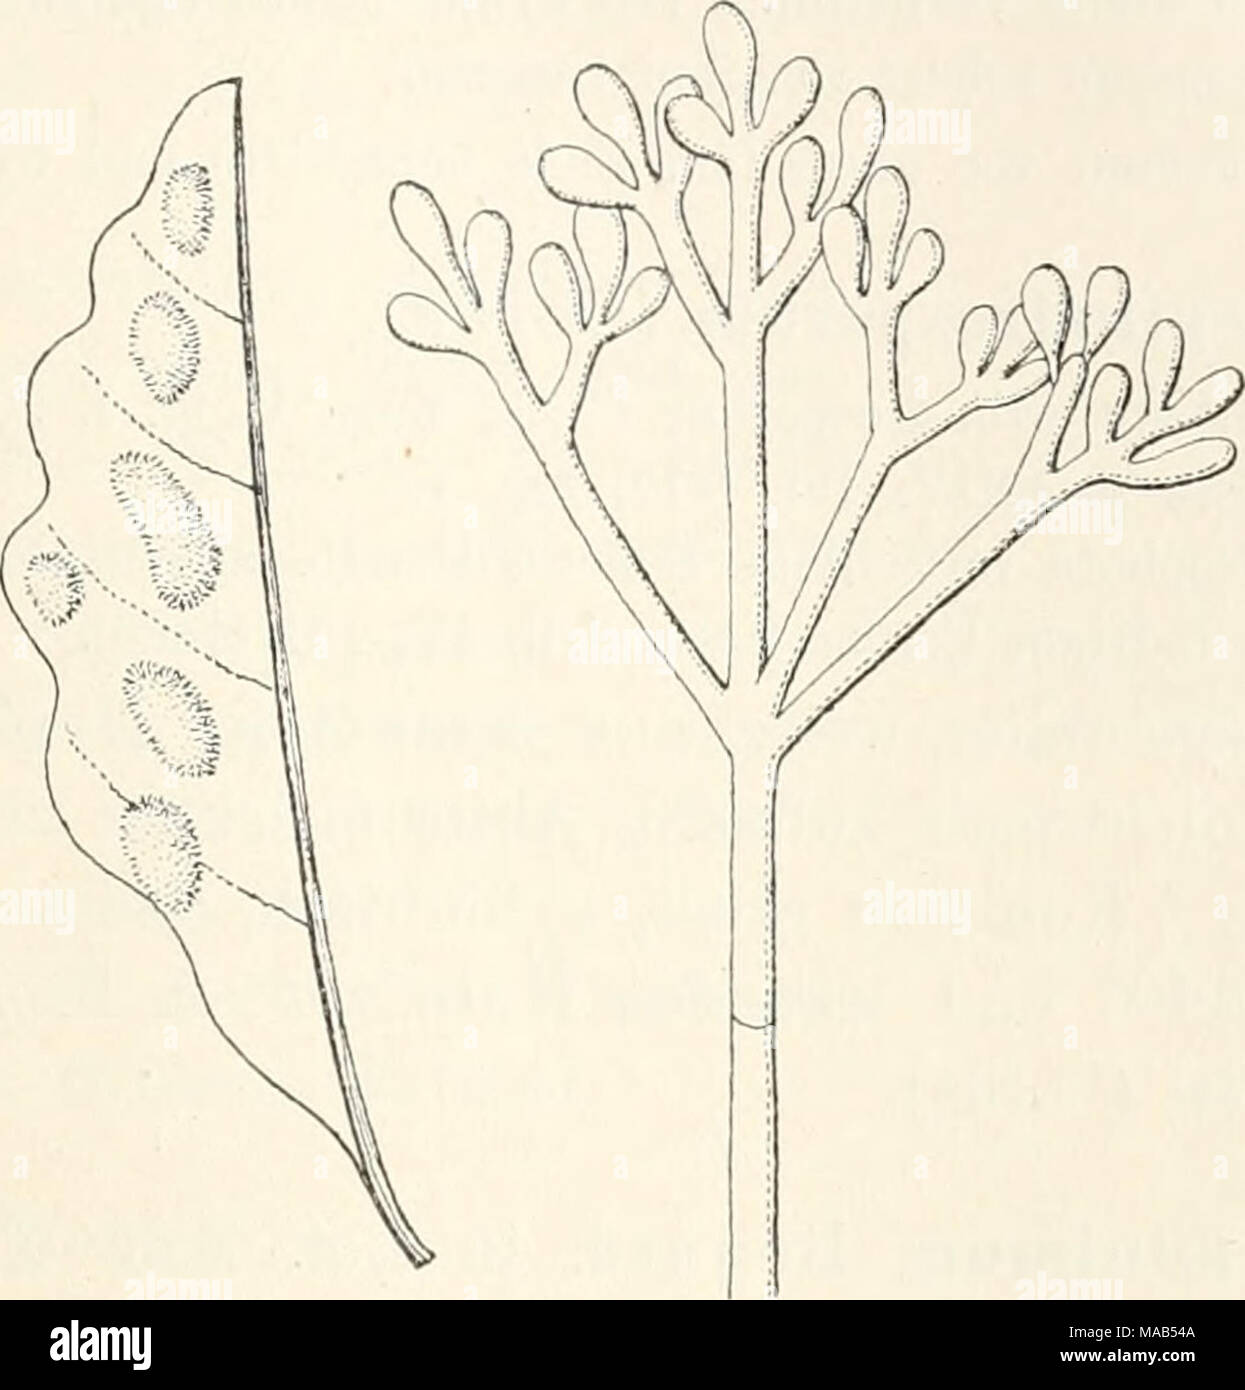 . Dr. L. Rabenhorst's Kryptogamen-Flora von Deutschland, Oesterreich und der Schweiz . Cladobotryum Thuemenii Sacc. Blattfiecken, nat. Grösse, und Konidienträger, vergr. (Nach Saccardo.) Zweifelhafte Art. 698. C. varium Nees Syst. p. 56 (1817), Fig. 54. — Sacc. Syll. IV, 160. Syn. Botrytis varisperma Link in Magaz. Ges. Nat. Fr. Berlin VII, 36 (1816). Dactylium varium Fries Syst. Myc. III, 414 (1832). Rasen spinnewebartig-, locker verflochten, zuerst weiss, dann blass rosa. Konidienträger unregelmässig verzweigt. Konidien länglich. An Holzsplittern ziemlich selten in Deutschland, Frankreich un Stock Photo